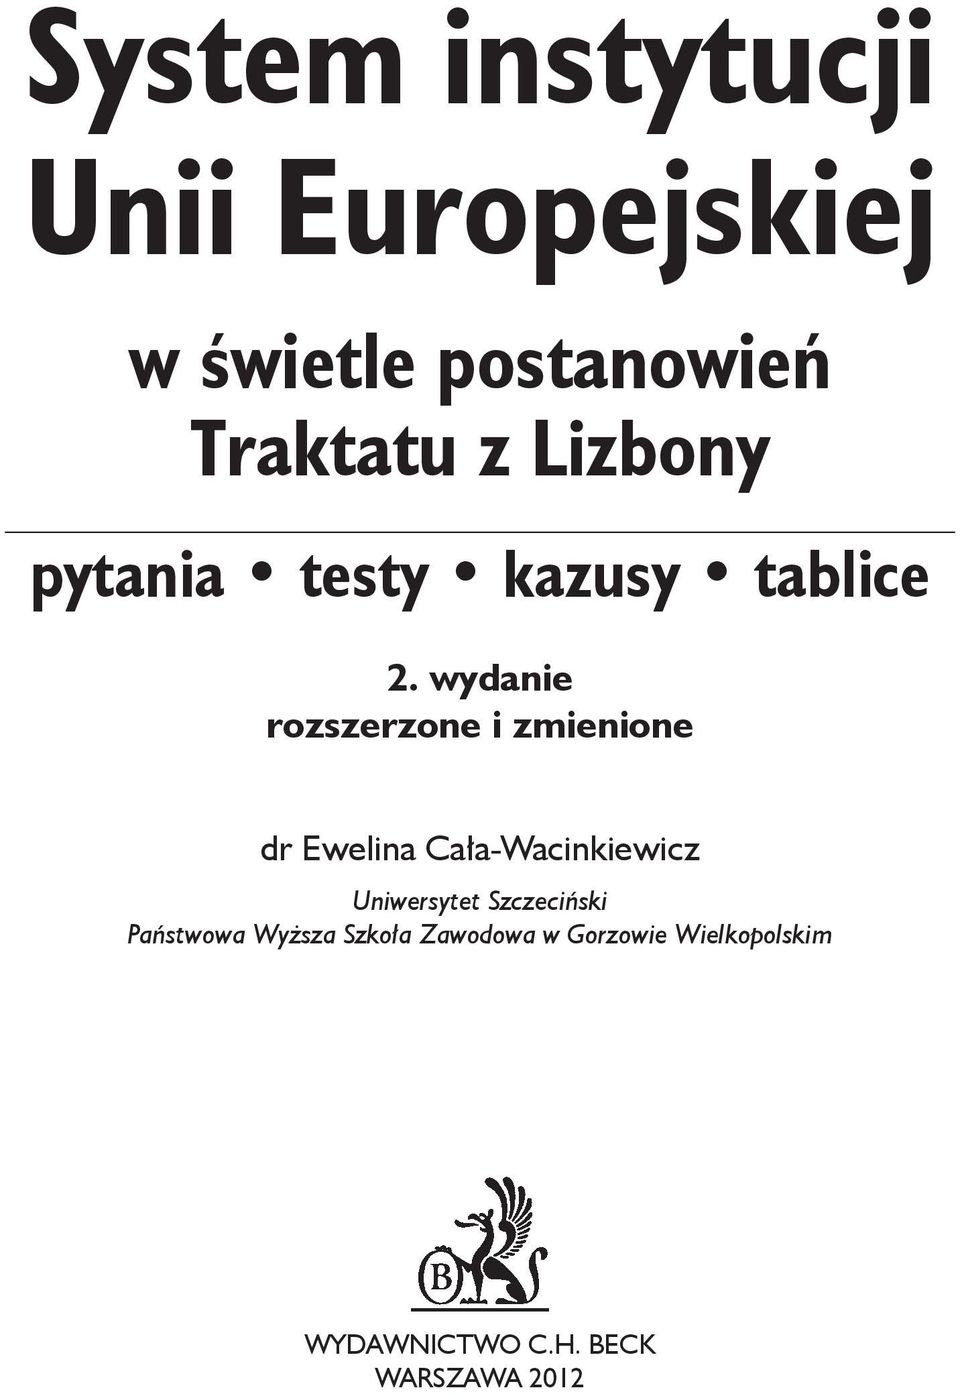 wydanie rozszerzone i zmienione dr Ewelina Cała-Wacinkiewicz